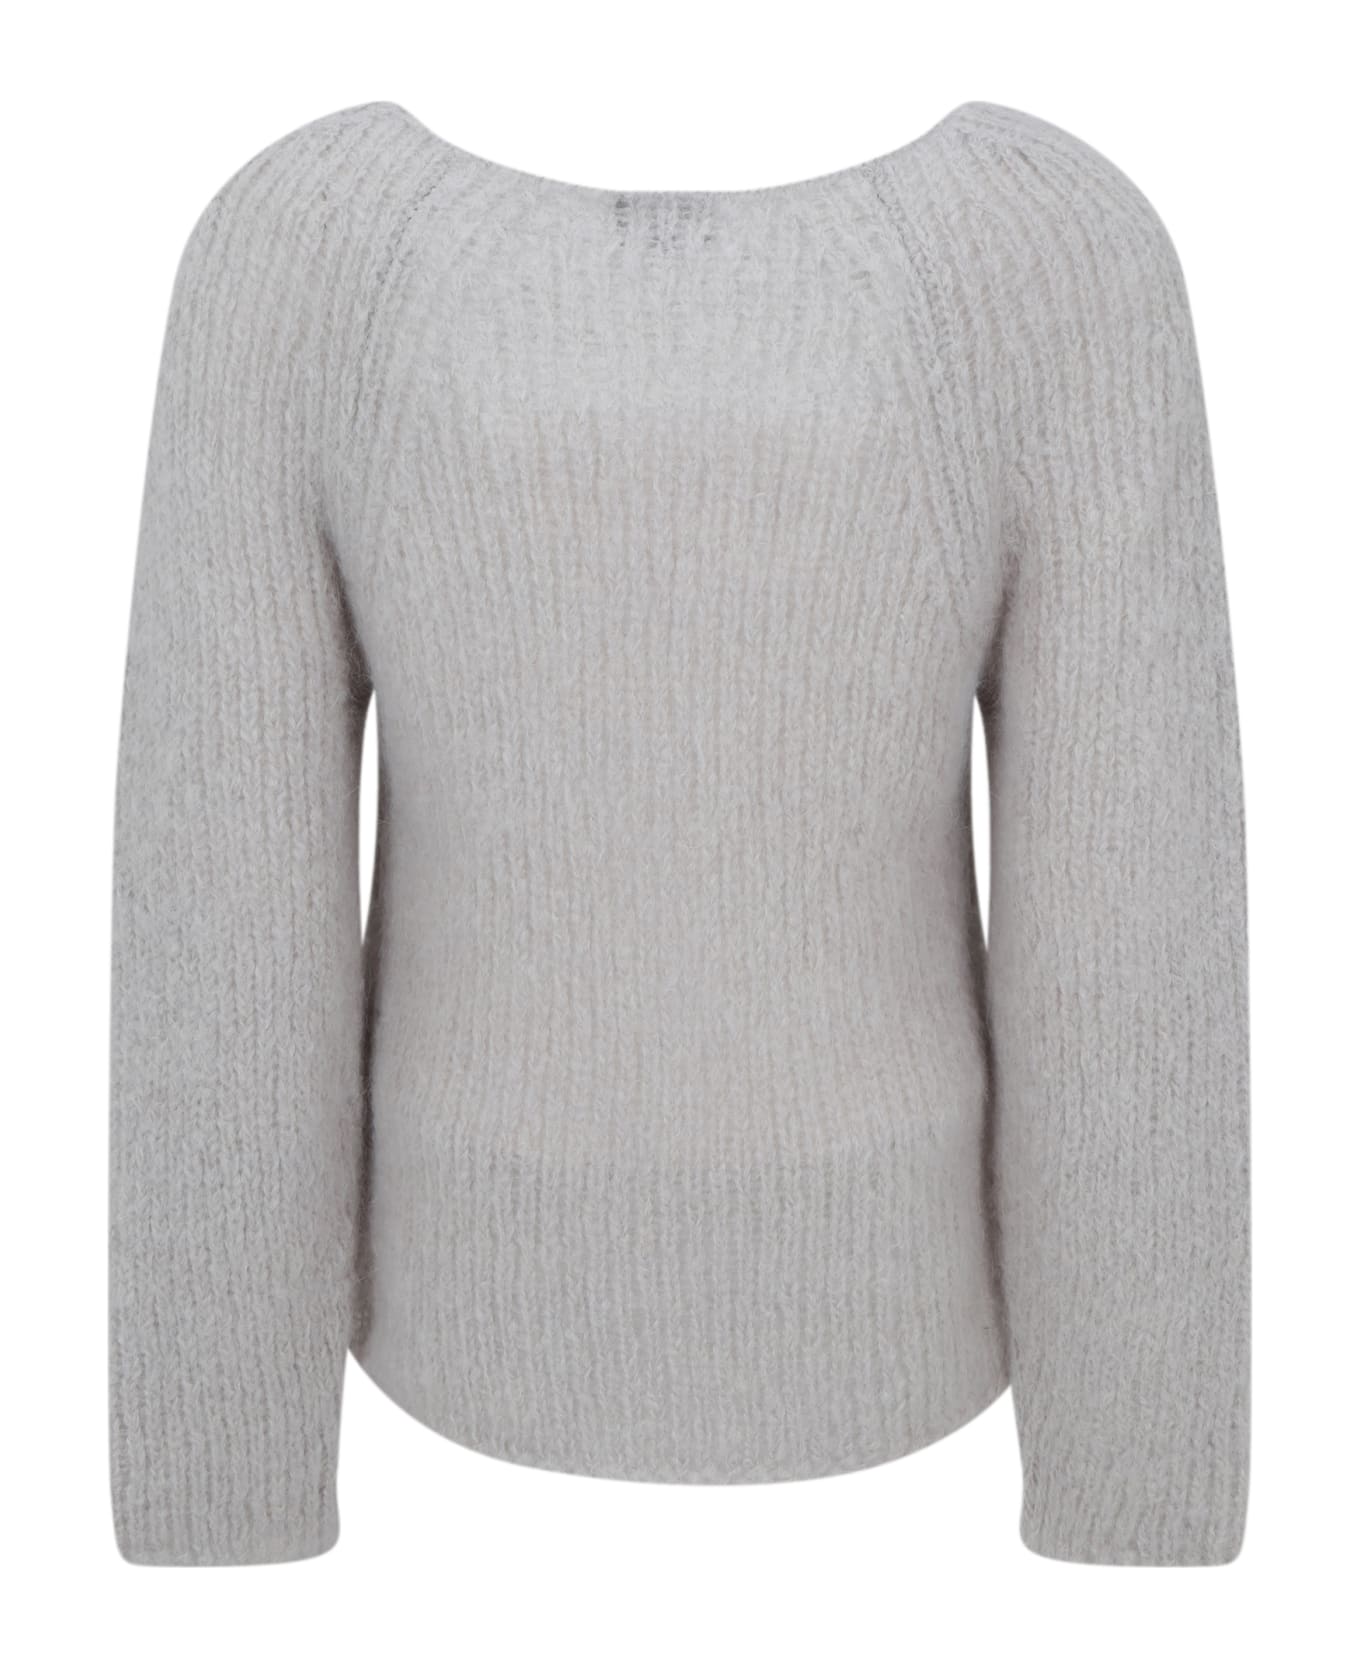 Giorgio Armani Sweater - U ニットウェア